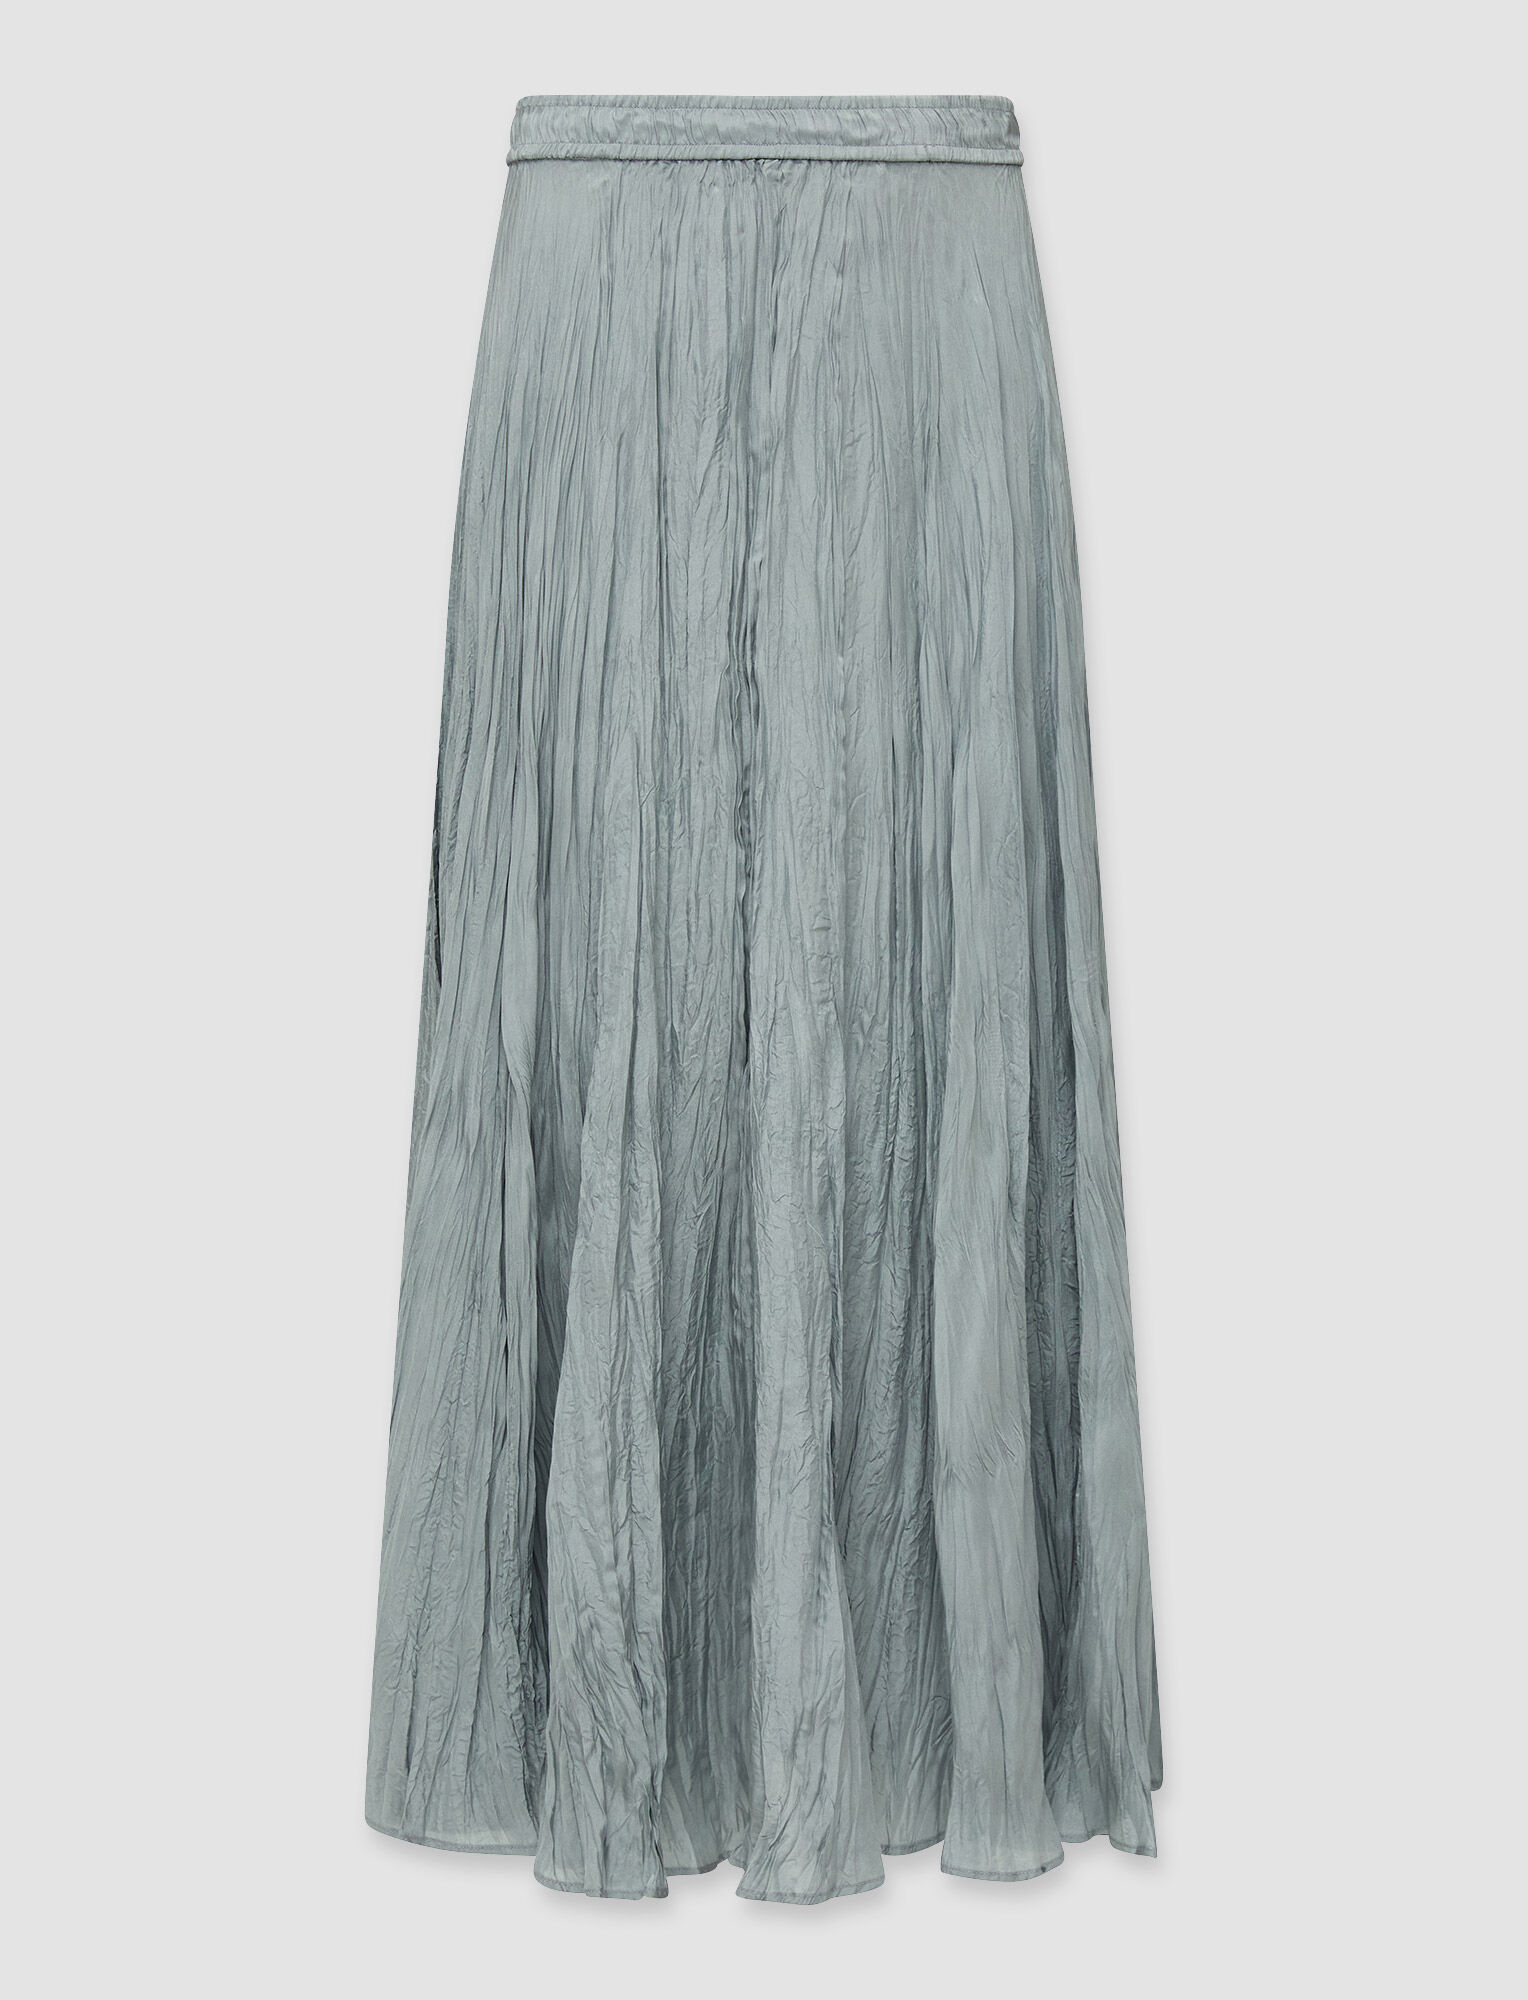 Joseph, Silk Habotai Sully Skirt – Shorter Length, in Dusty Blue